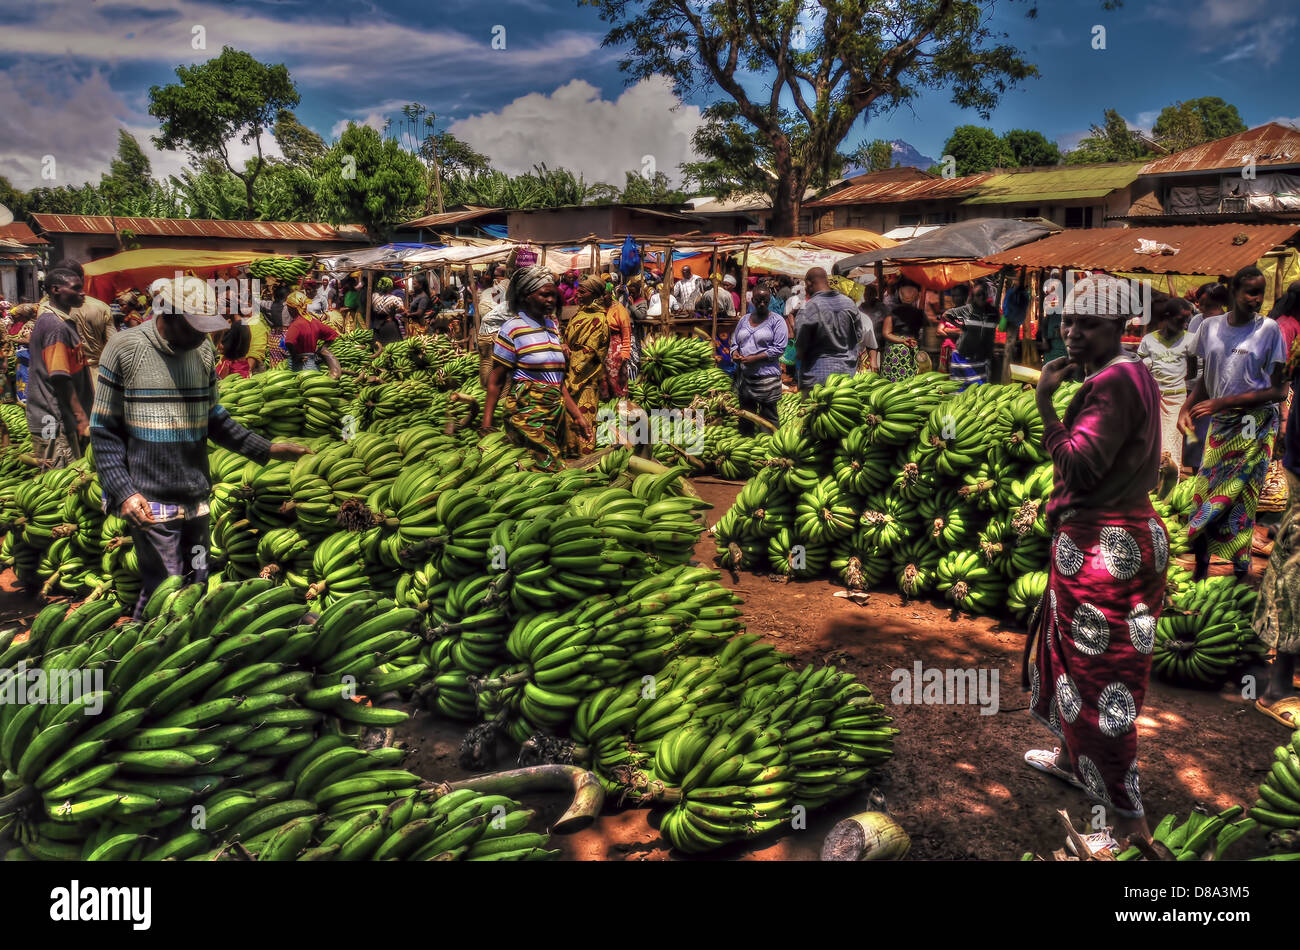 Banana Market in Kilimanjero area, Tanzania Stock Photo